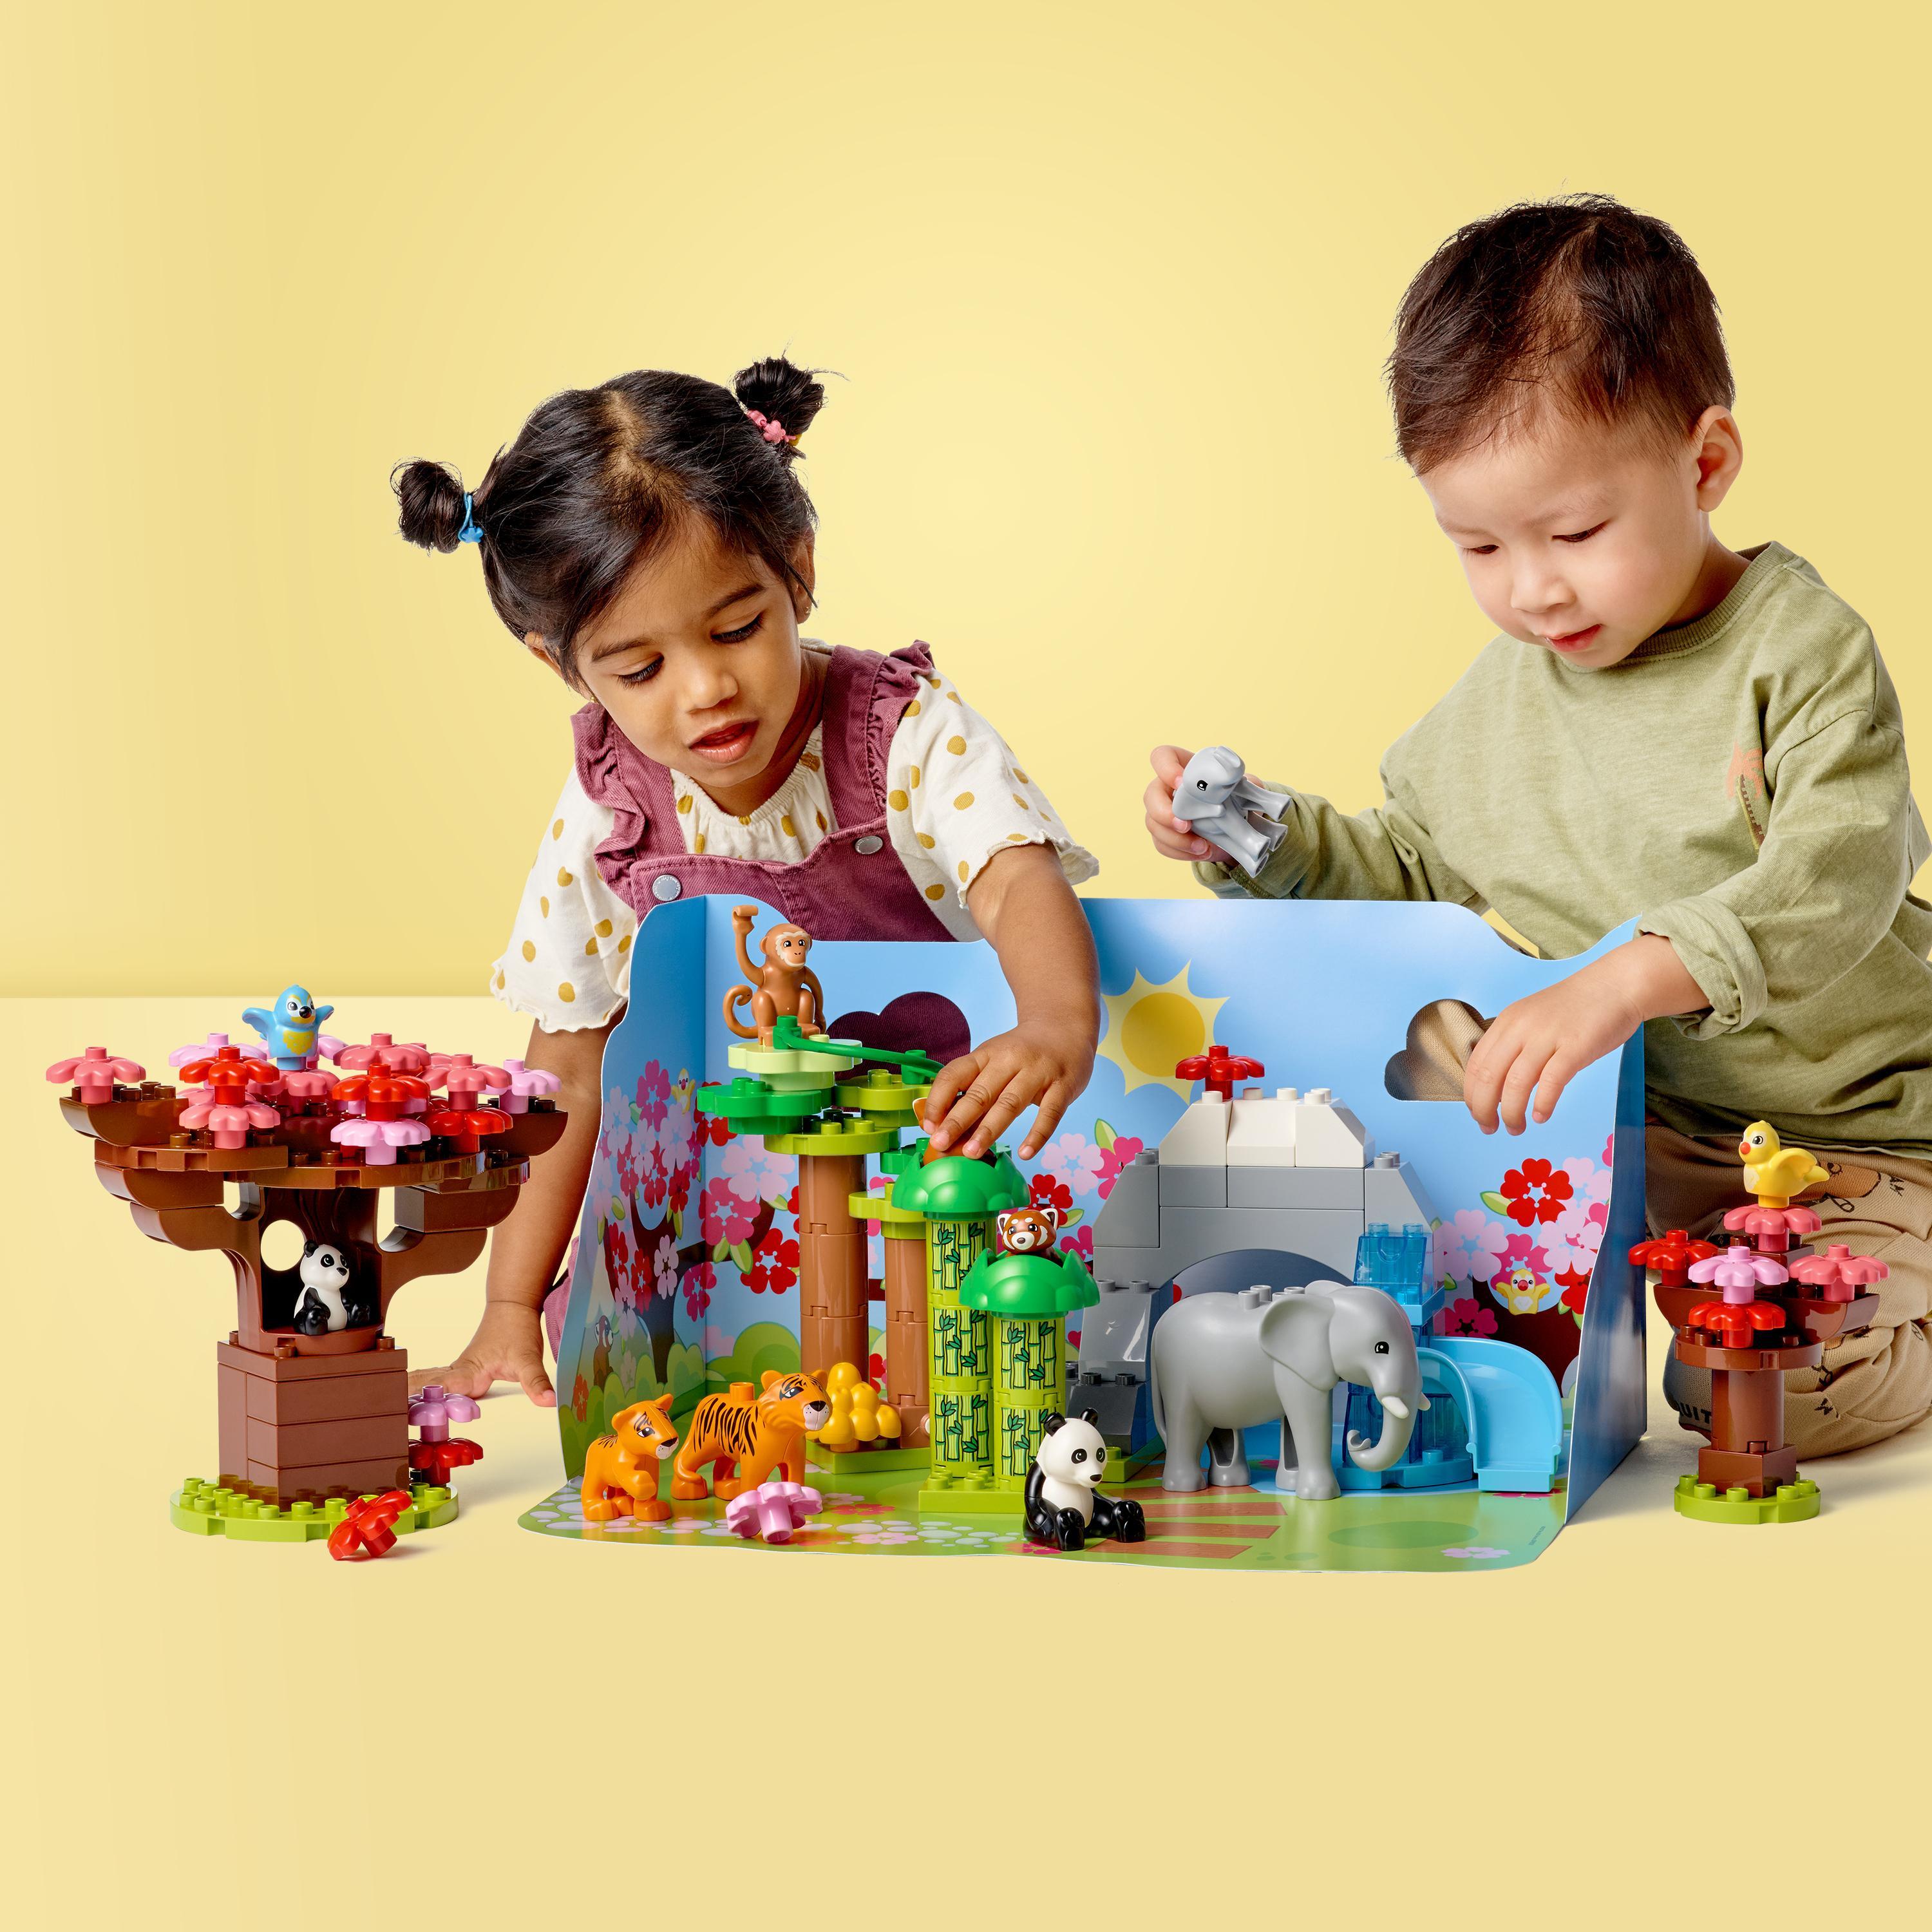 LEGO Duplo Animali dell'Asia Giochi Educativi per Bambini